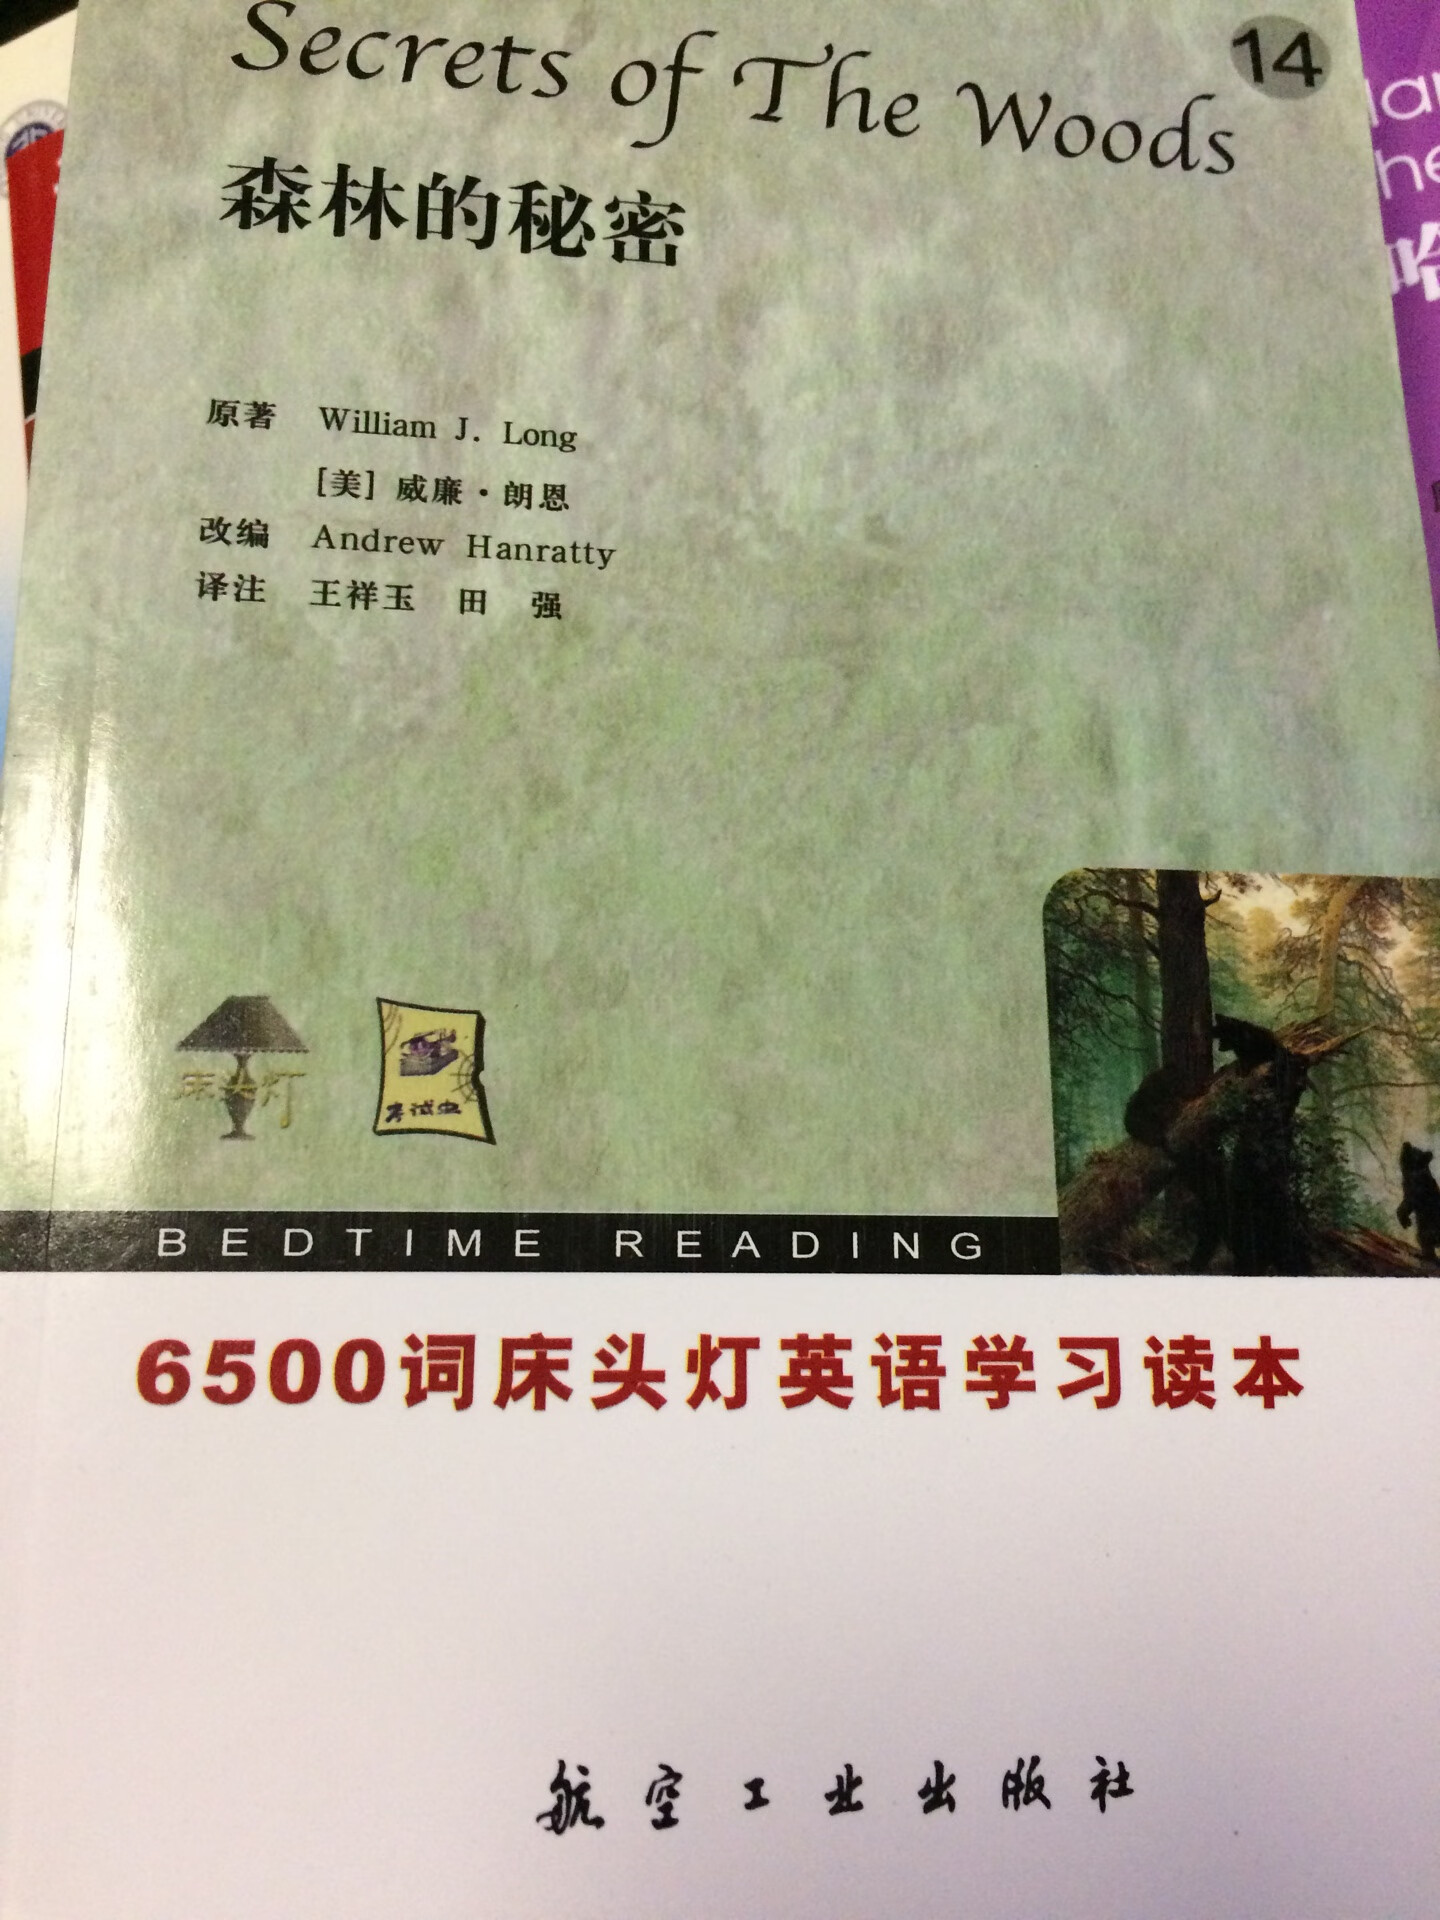 无塑封32开，中英双语，内容丰富，值得推荐。